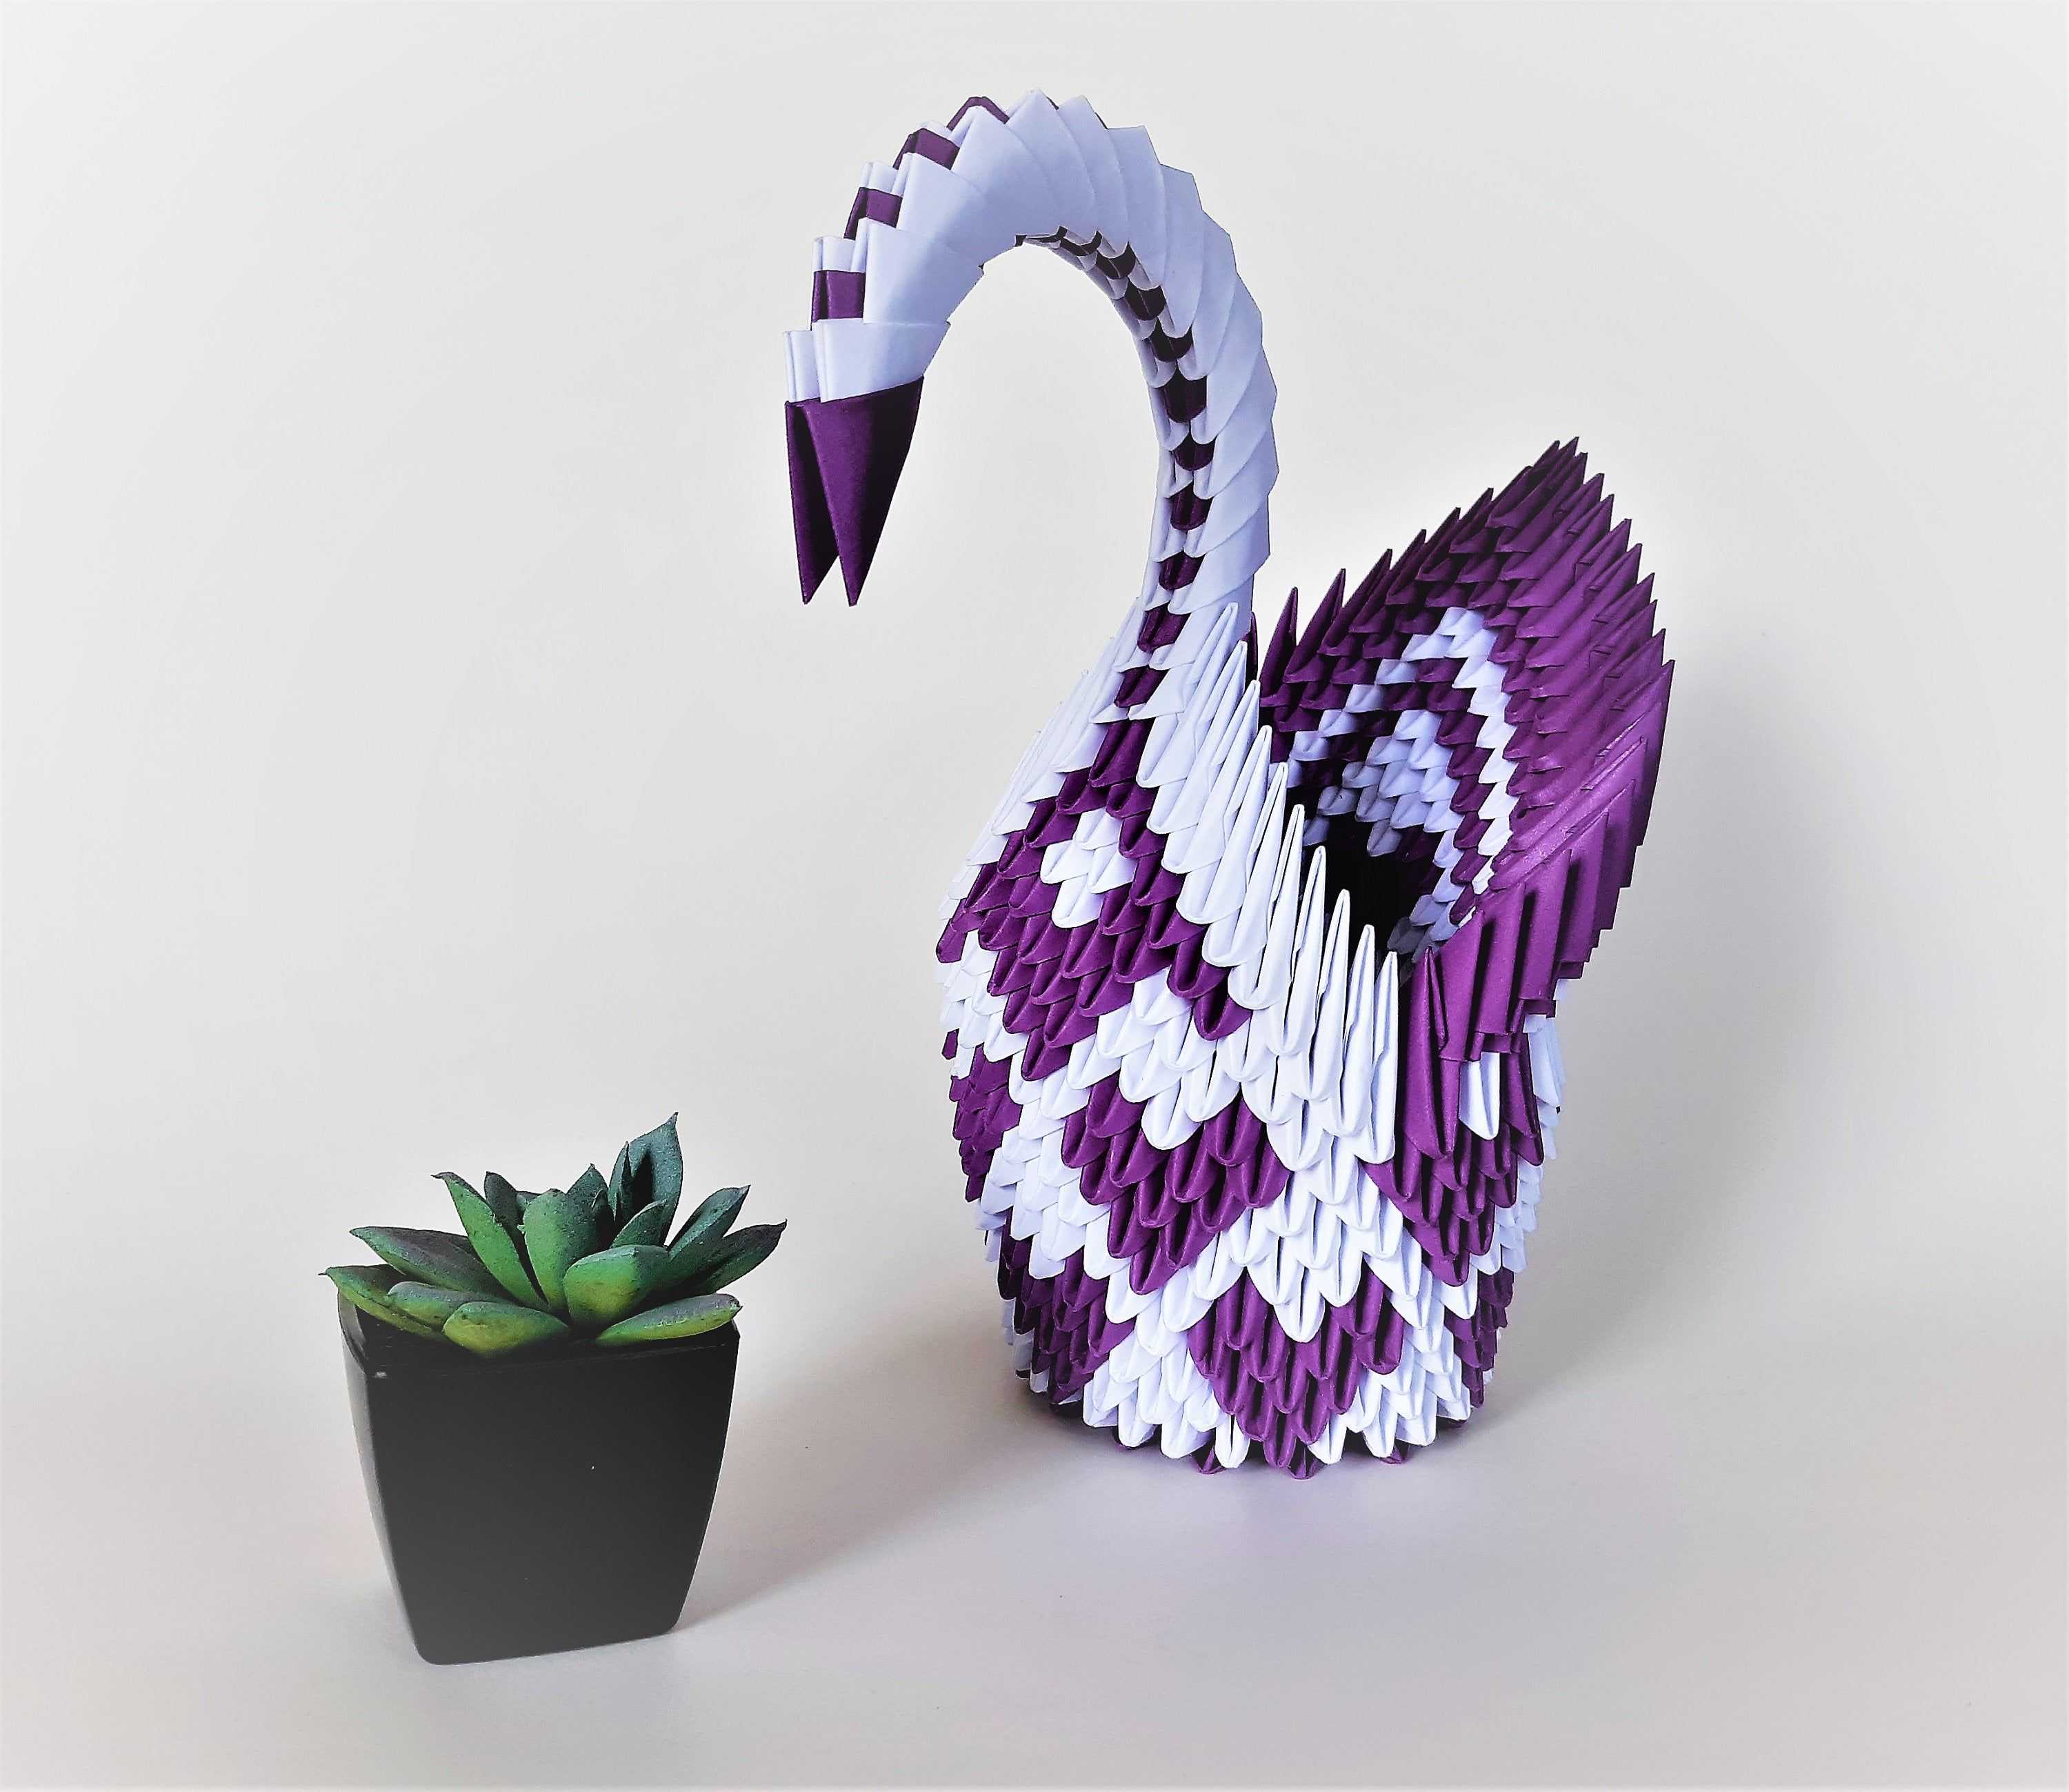 Модульное оригами для начинающих — схемы сборки, ваза, тюльпан пошагово с фото в технике модульное оригами